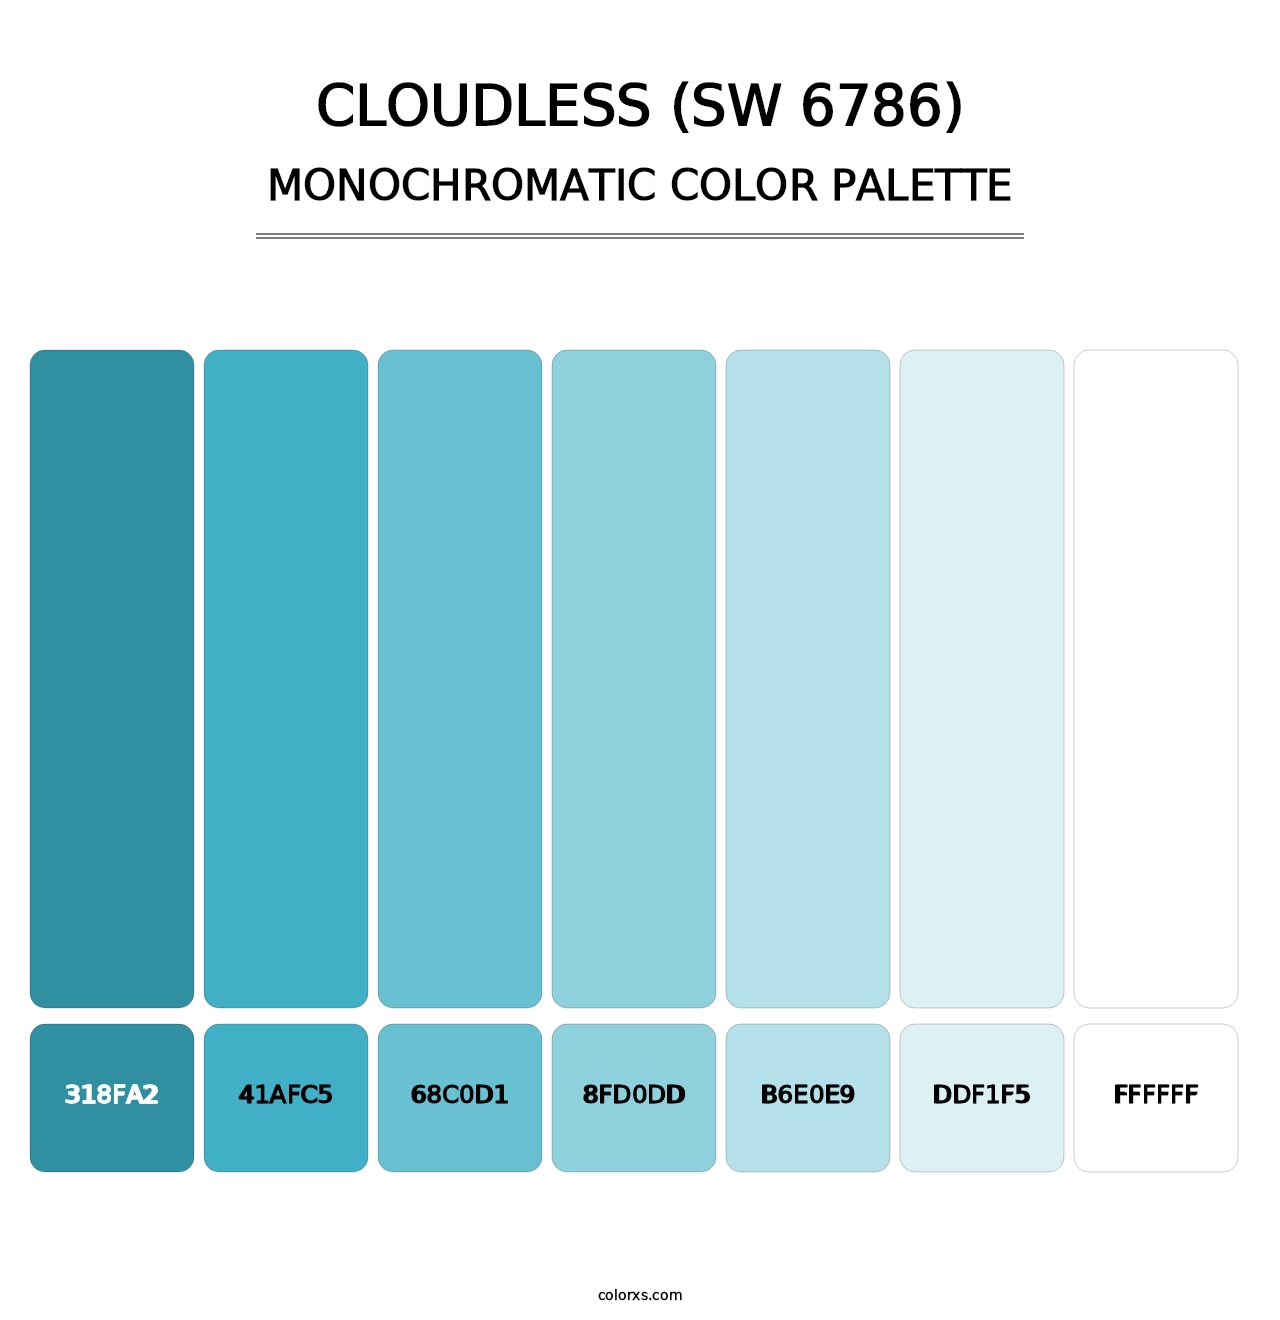 Cloudless (SW 6786) - Monochromatic Color Palette